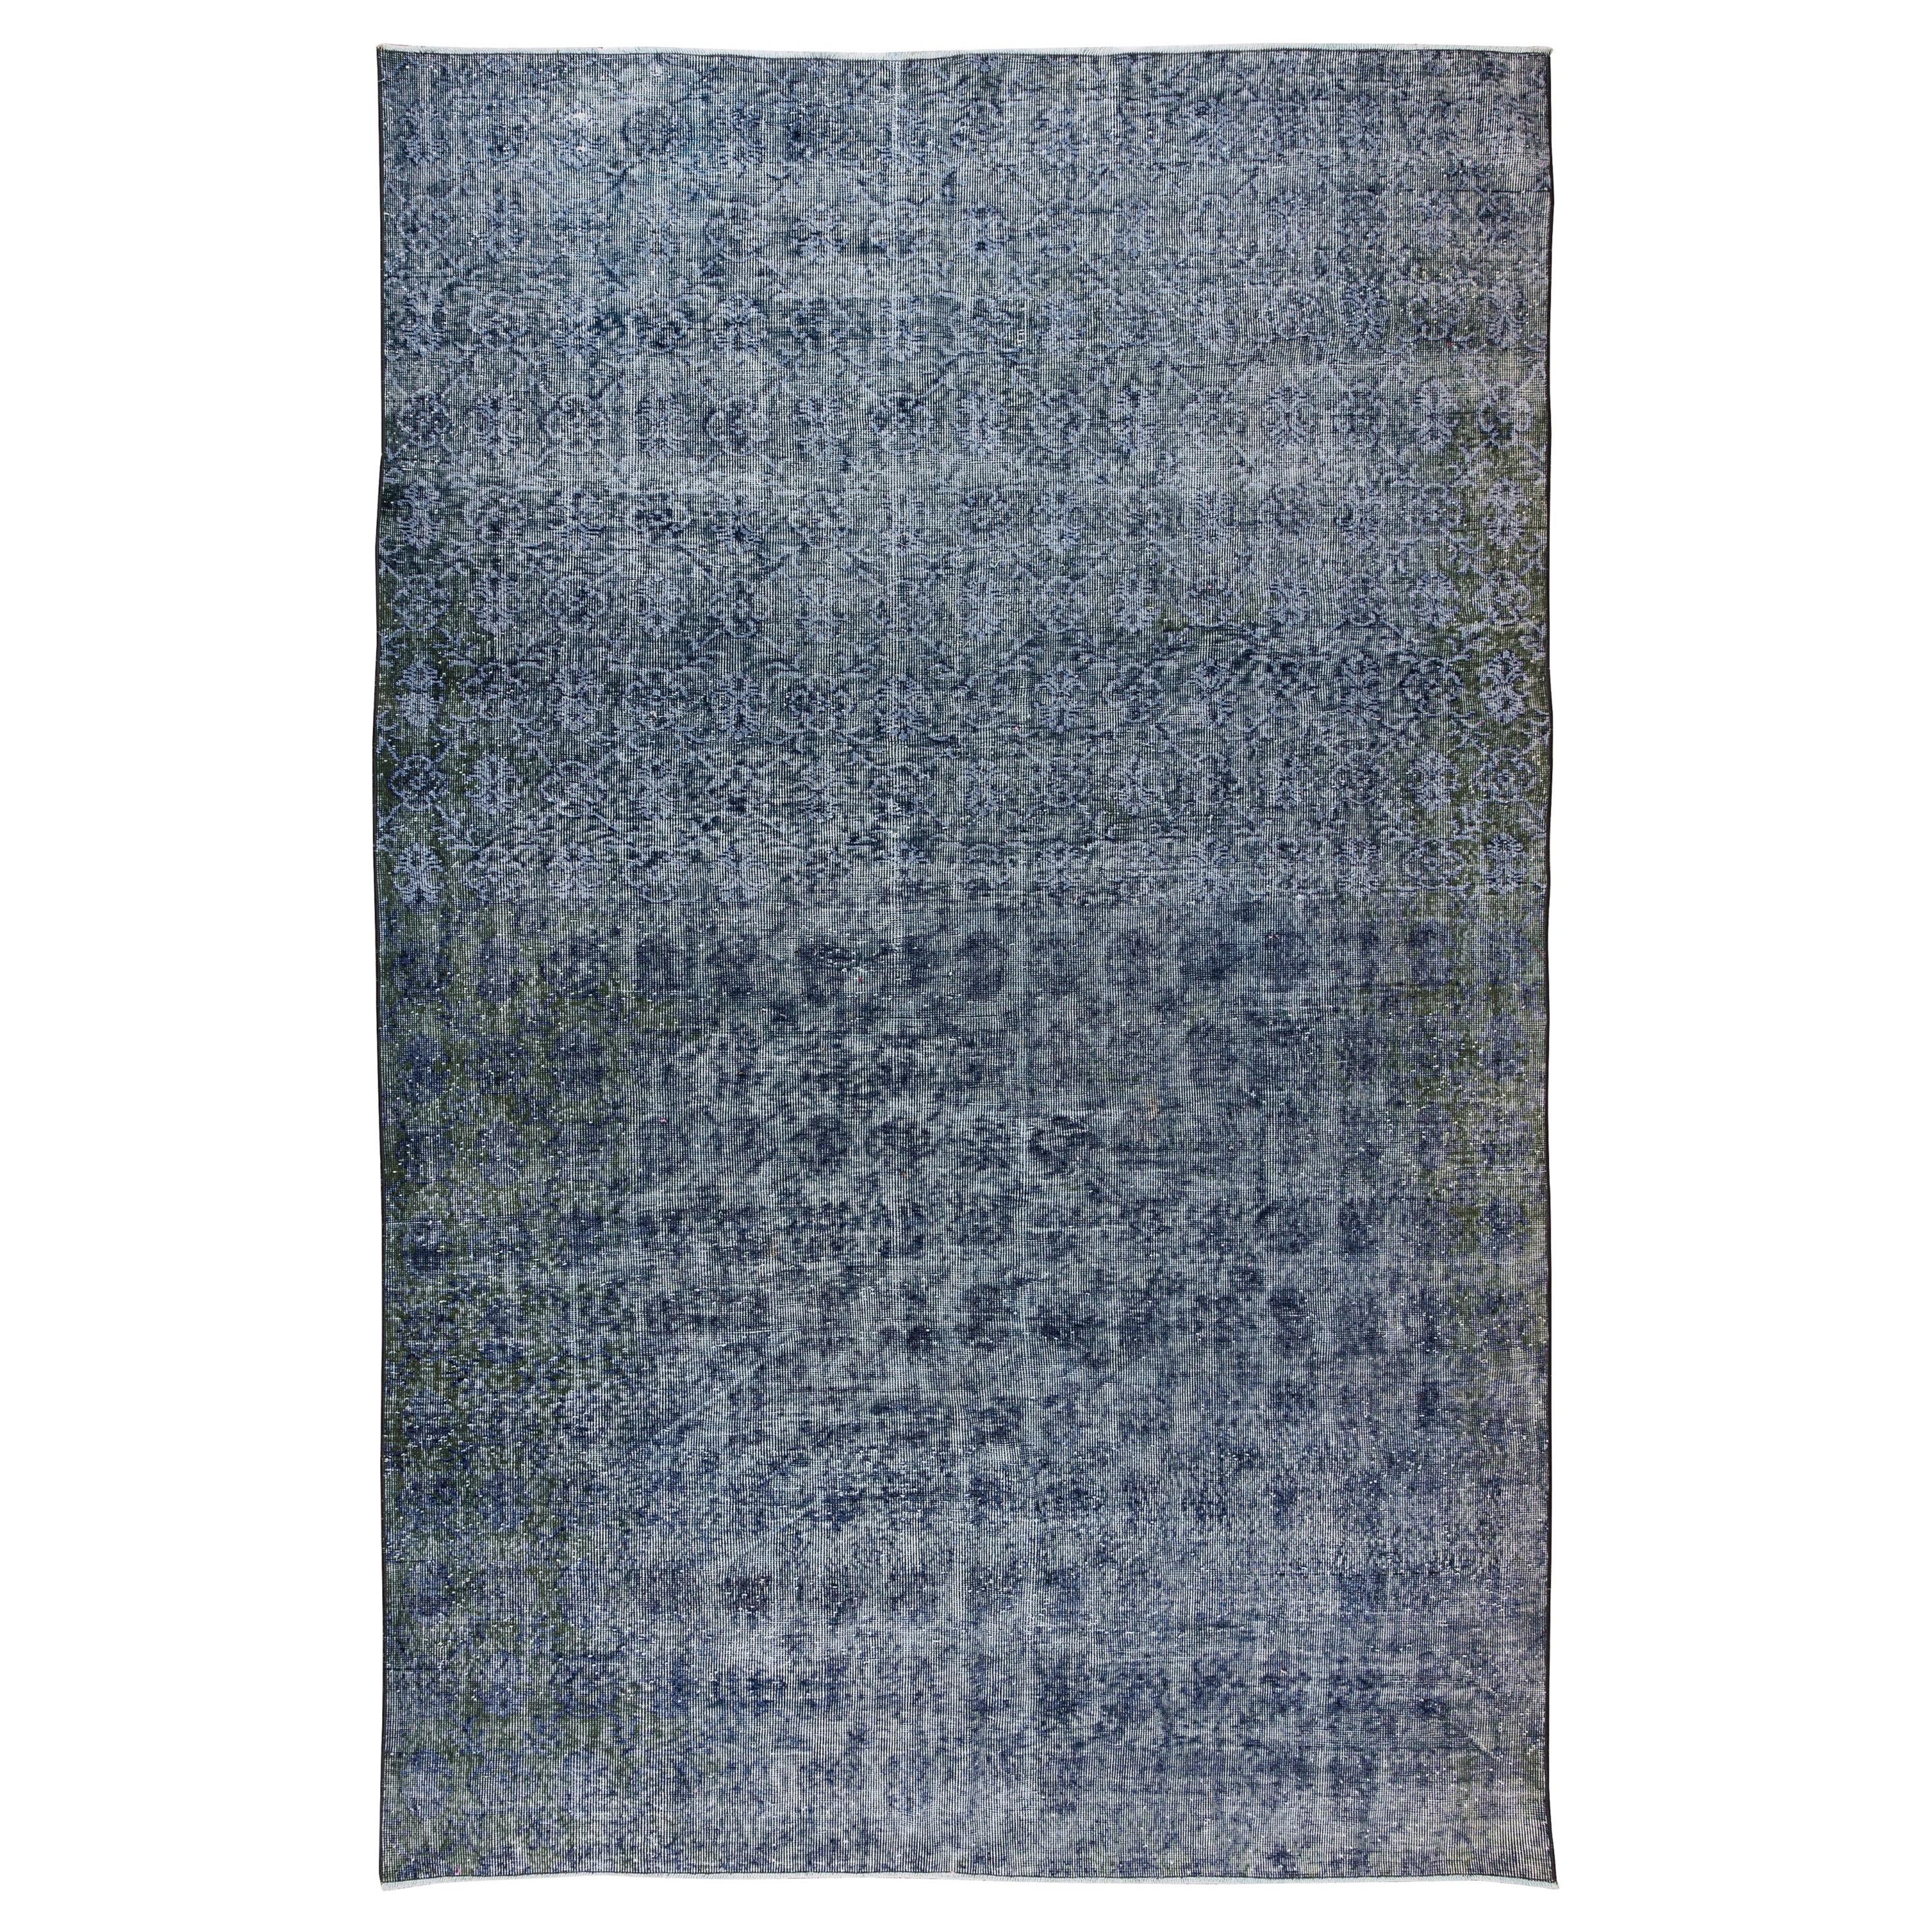 7x10.5 Ft Handmade Turkish Wool Area Rug in Navy Blue for Modern Interiors (Tapis en laine turque fait à la main en bleu marine pour les intérieurs modernes)